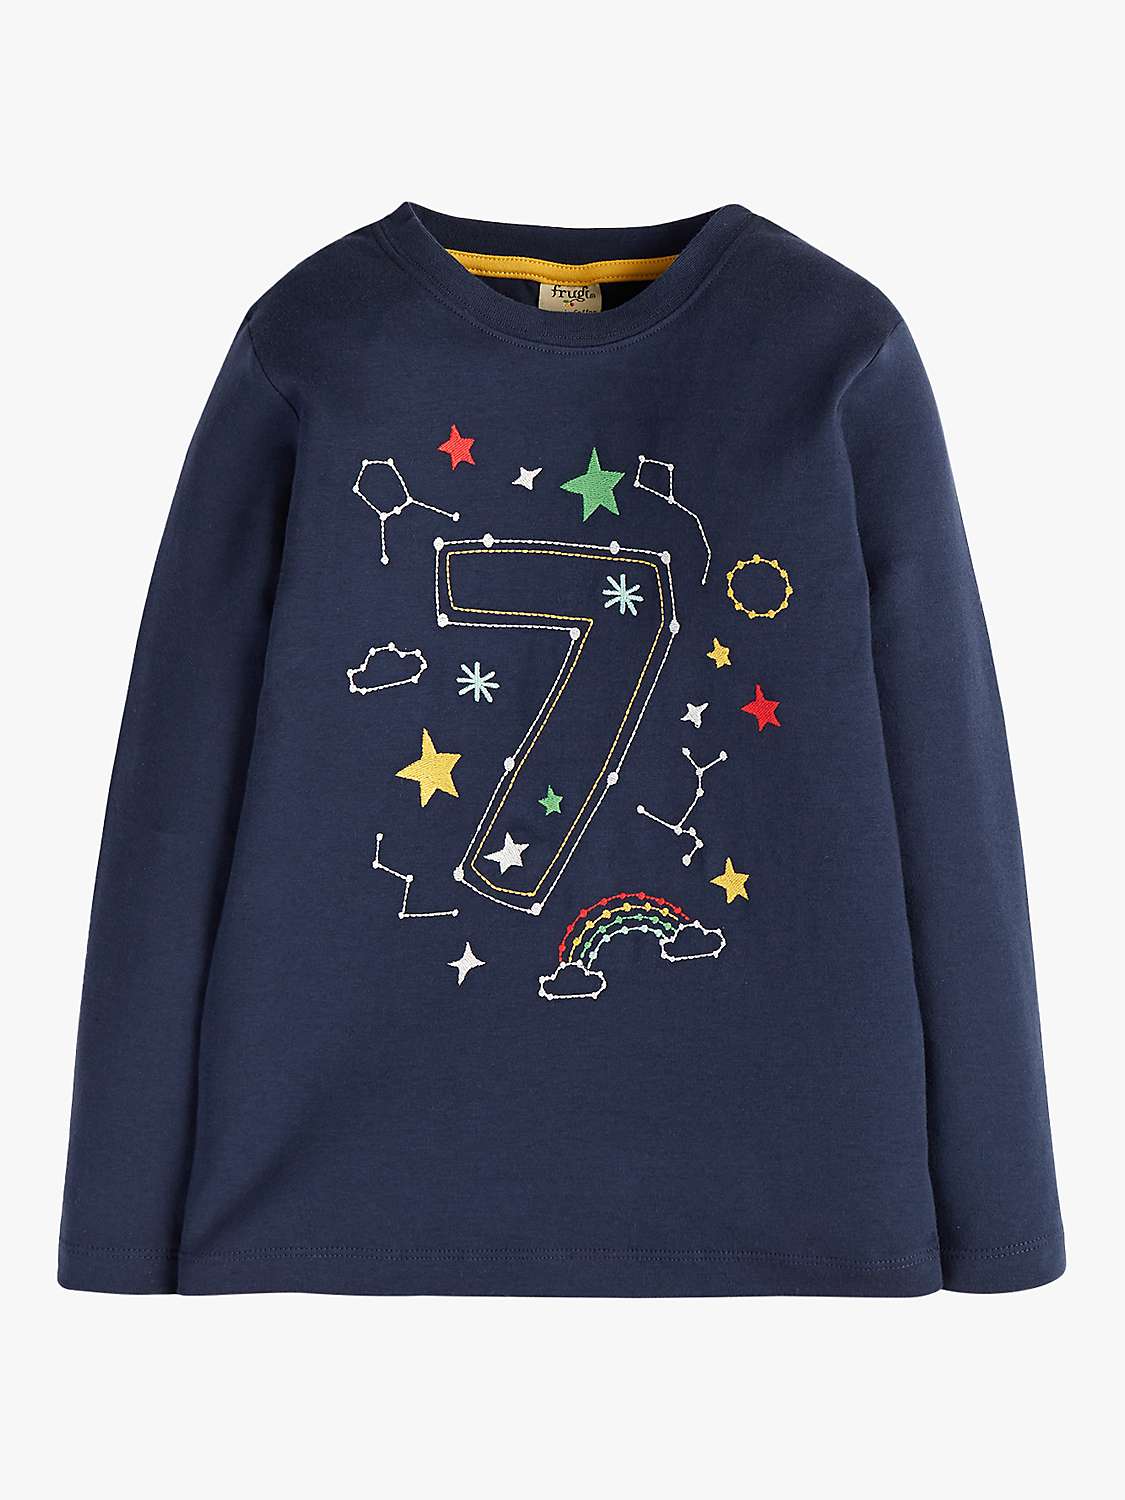 Buy Frugi Kids' Magic Number 7 Organic Cotton Constellation T-shirt, Indigo/Multi Online at johnlewis.com